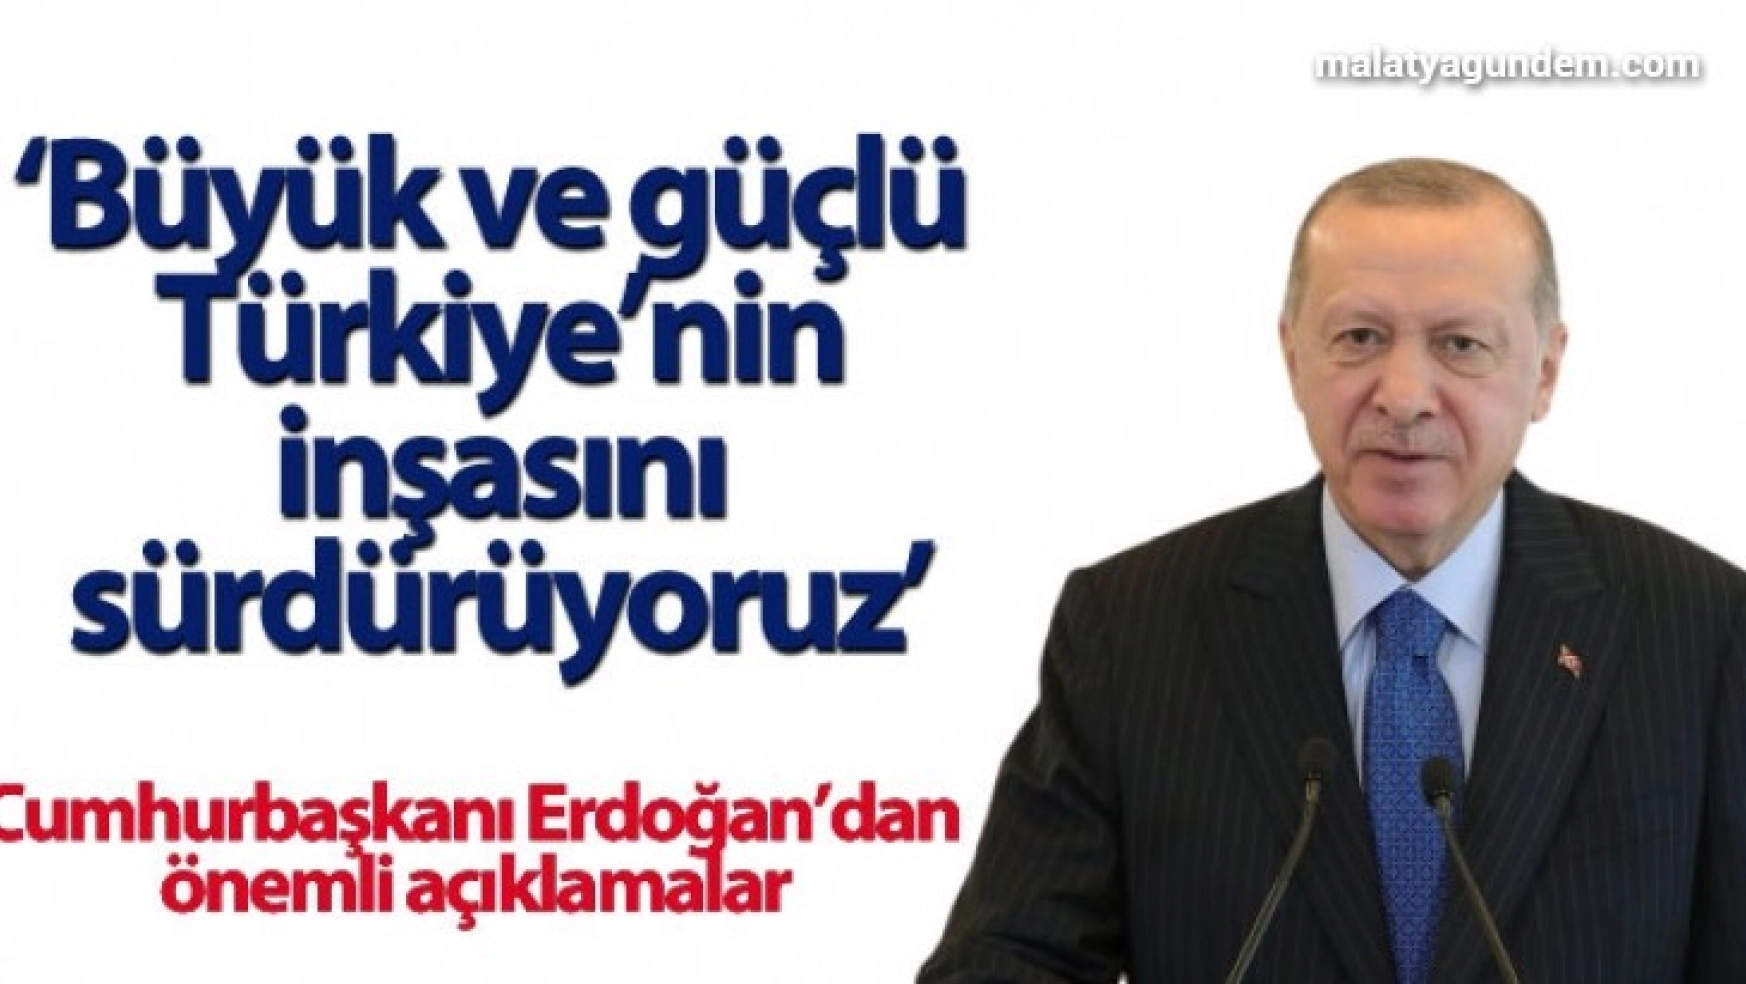 Cumhurbaşkanı Erdoğan, 'Büyük ve güçlü Türkiye'nin inşasını sürdürüyoruz'